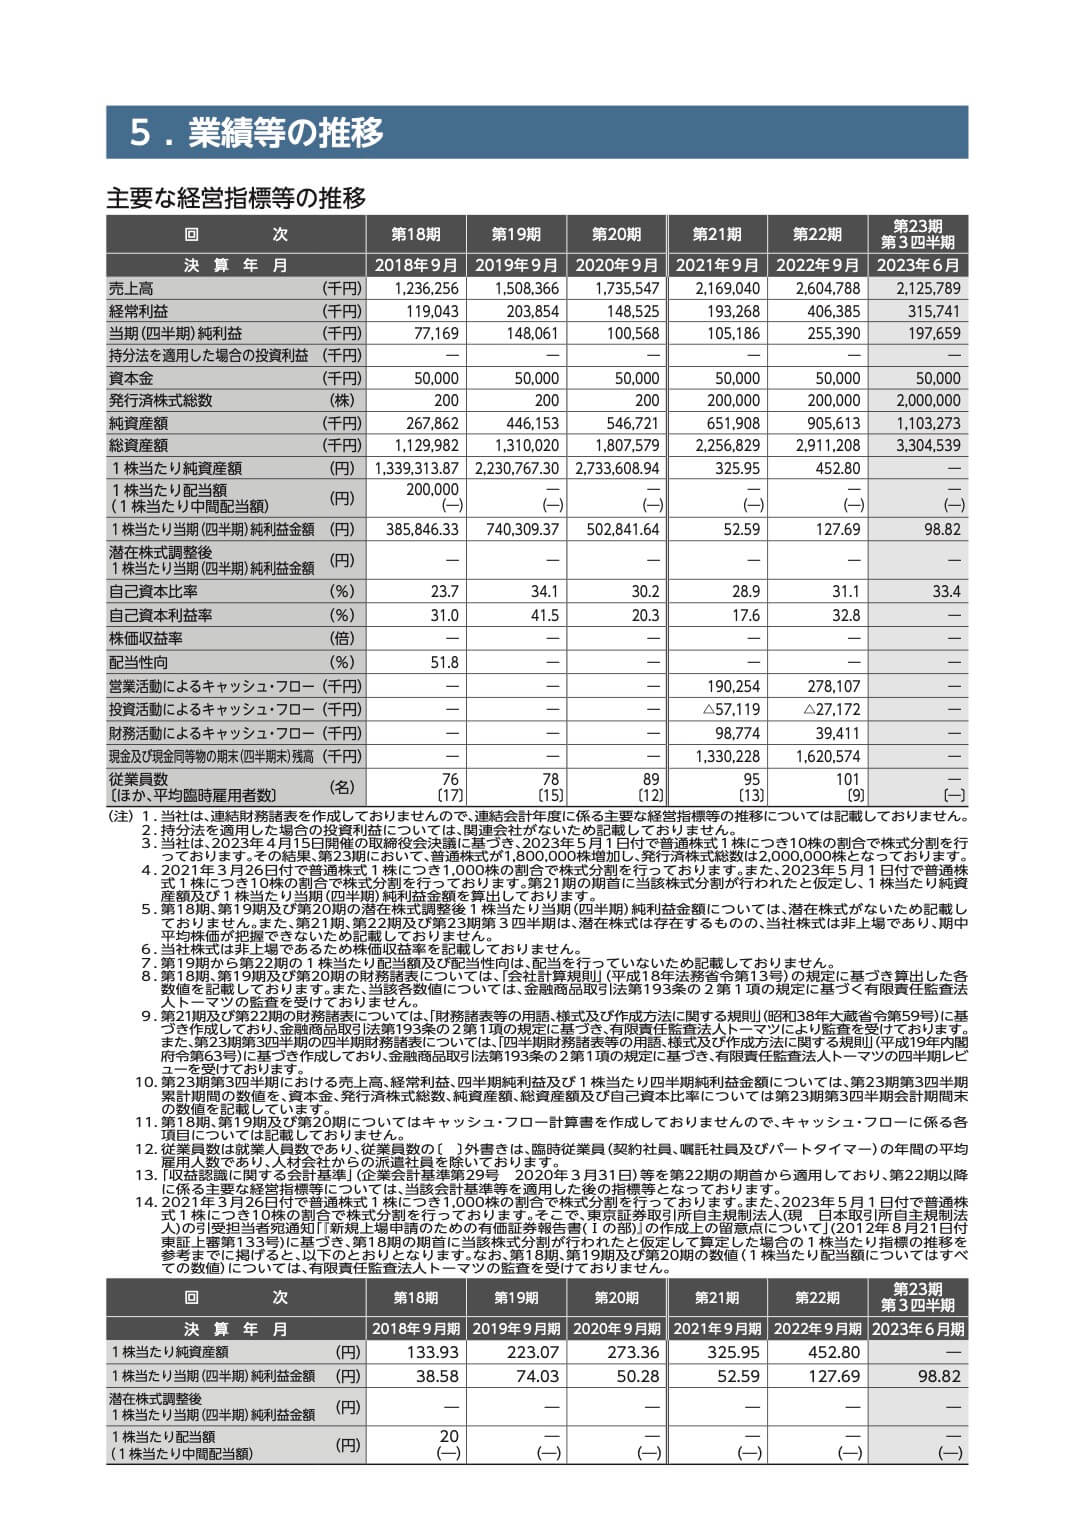 ニッポンインシュア(5843)の主要な経営指標等の推移